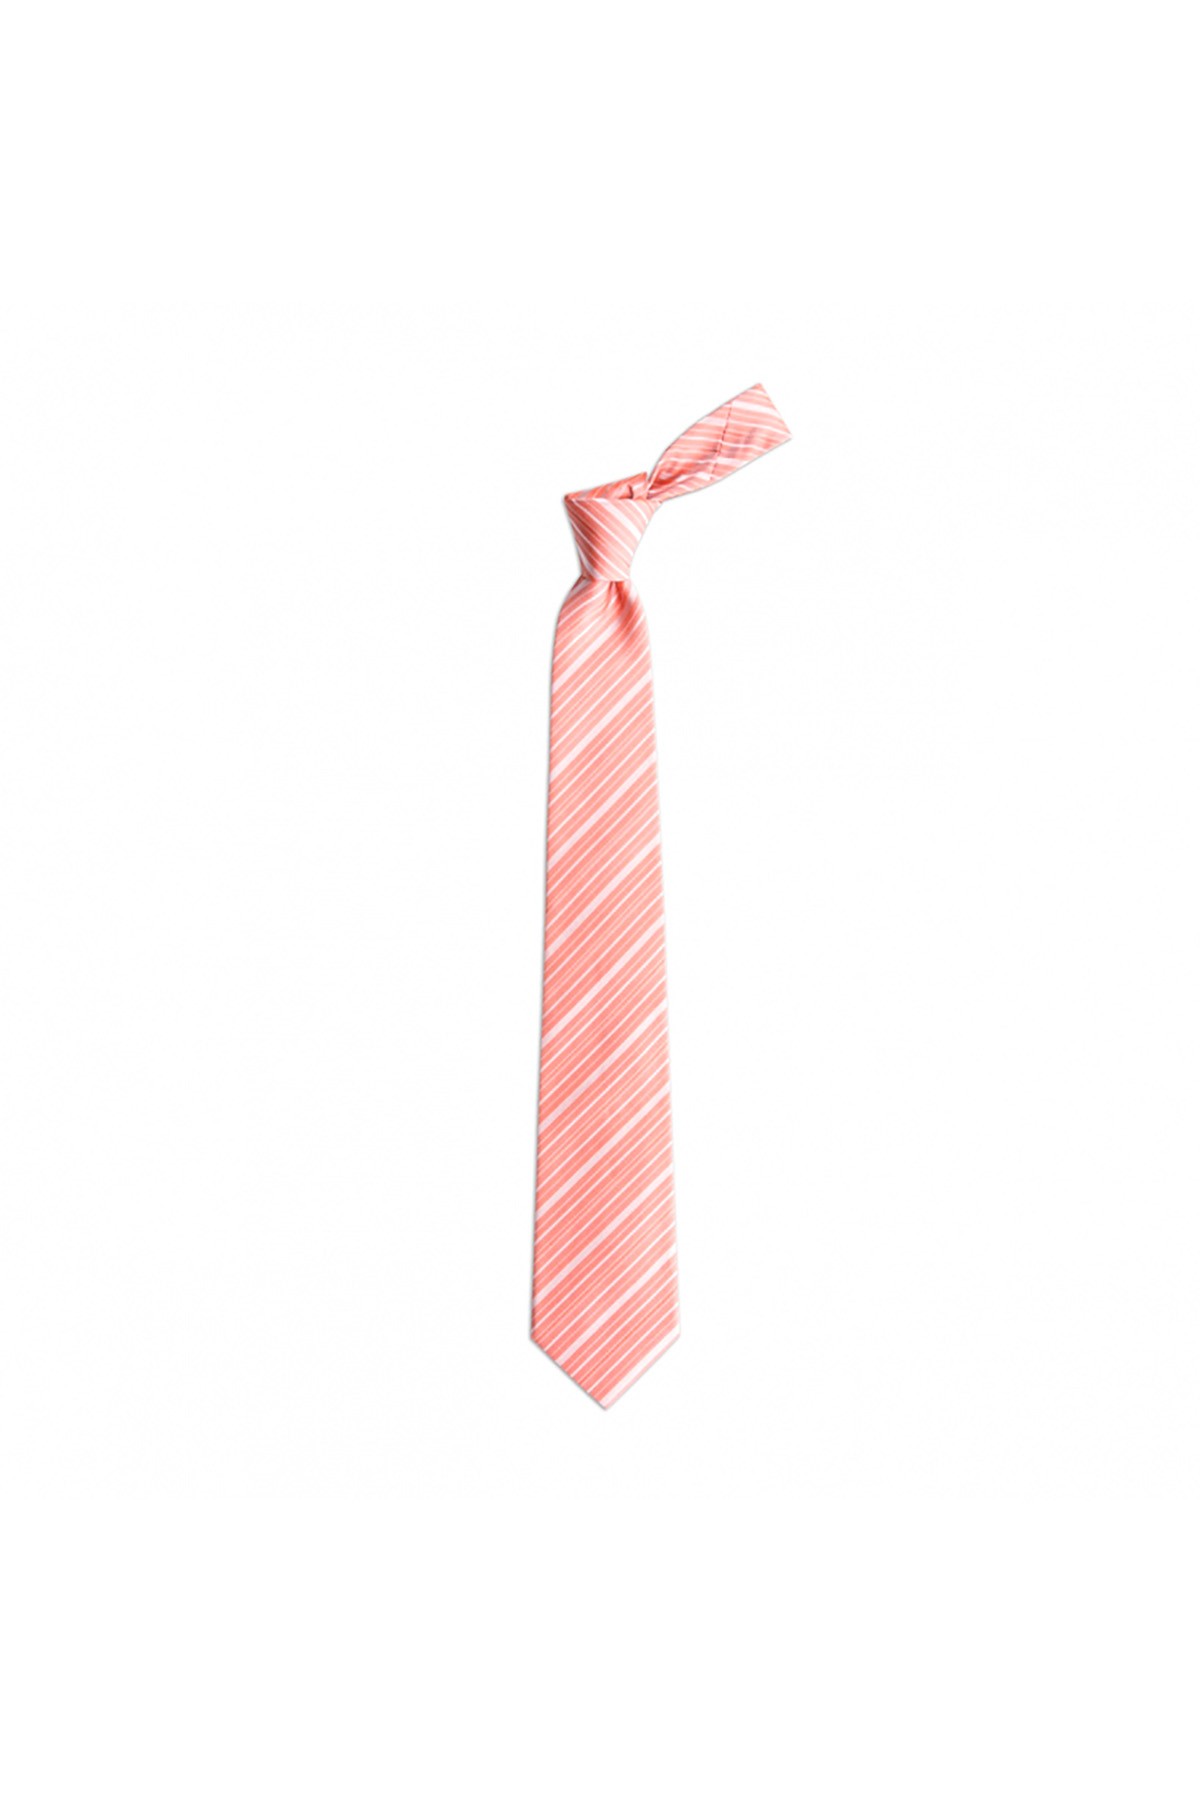 İnce çizgili 8 cm genişliğinde klasik ipek kravat - Turuncu